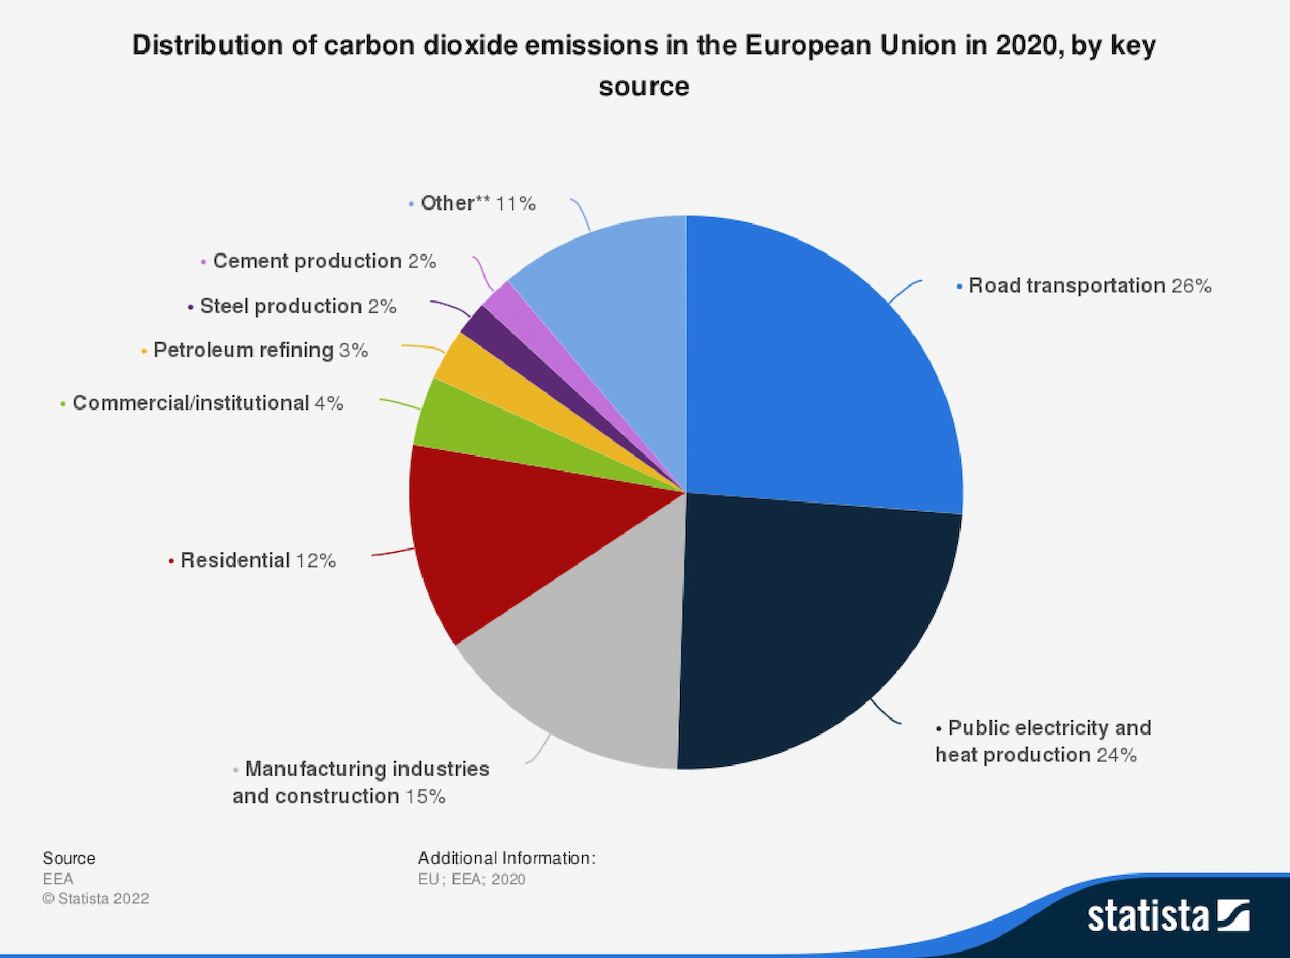 Grafico con emissioni di anidride carbonica suddivise per settore nell'Unione Europea